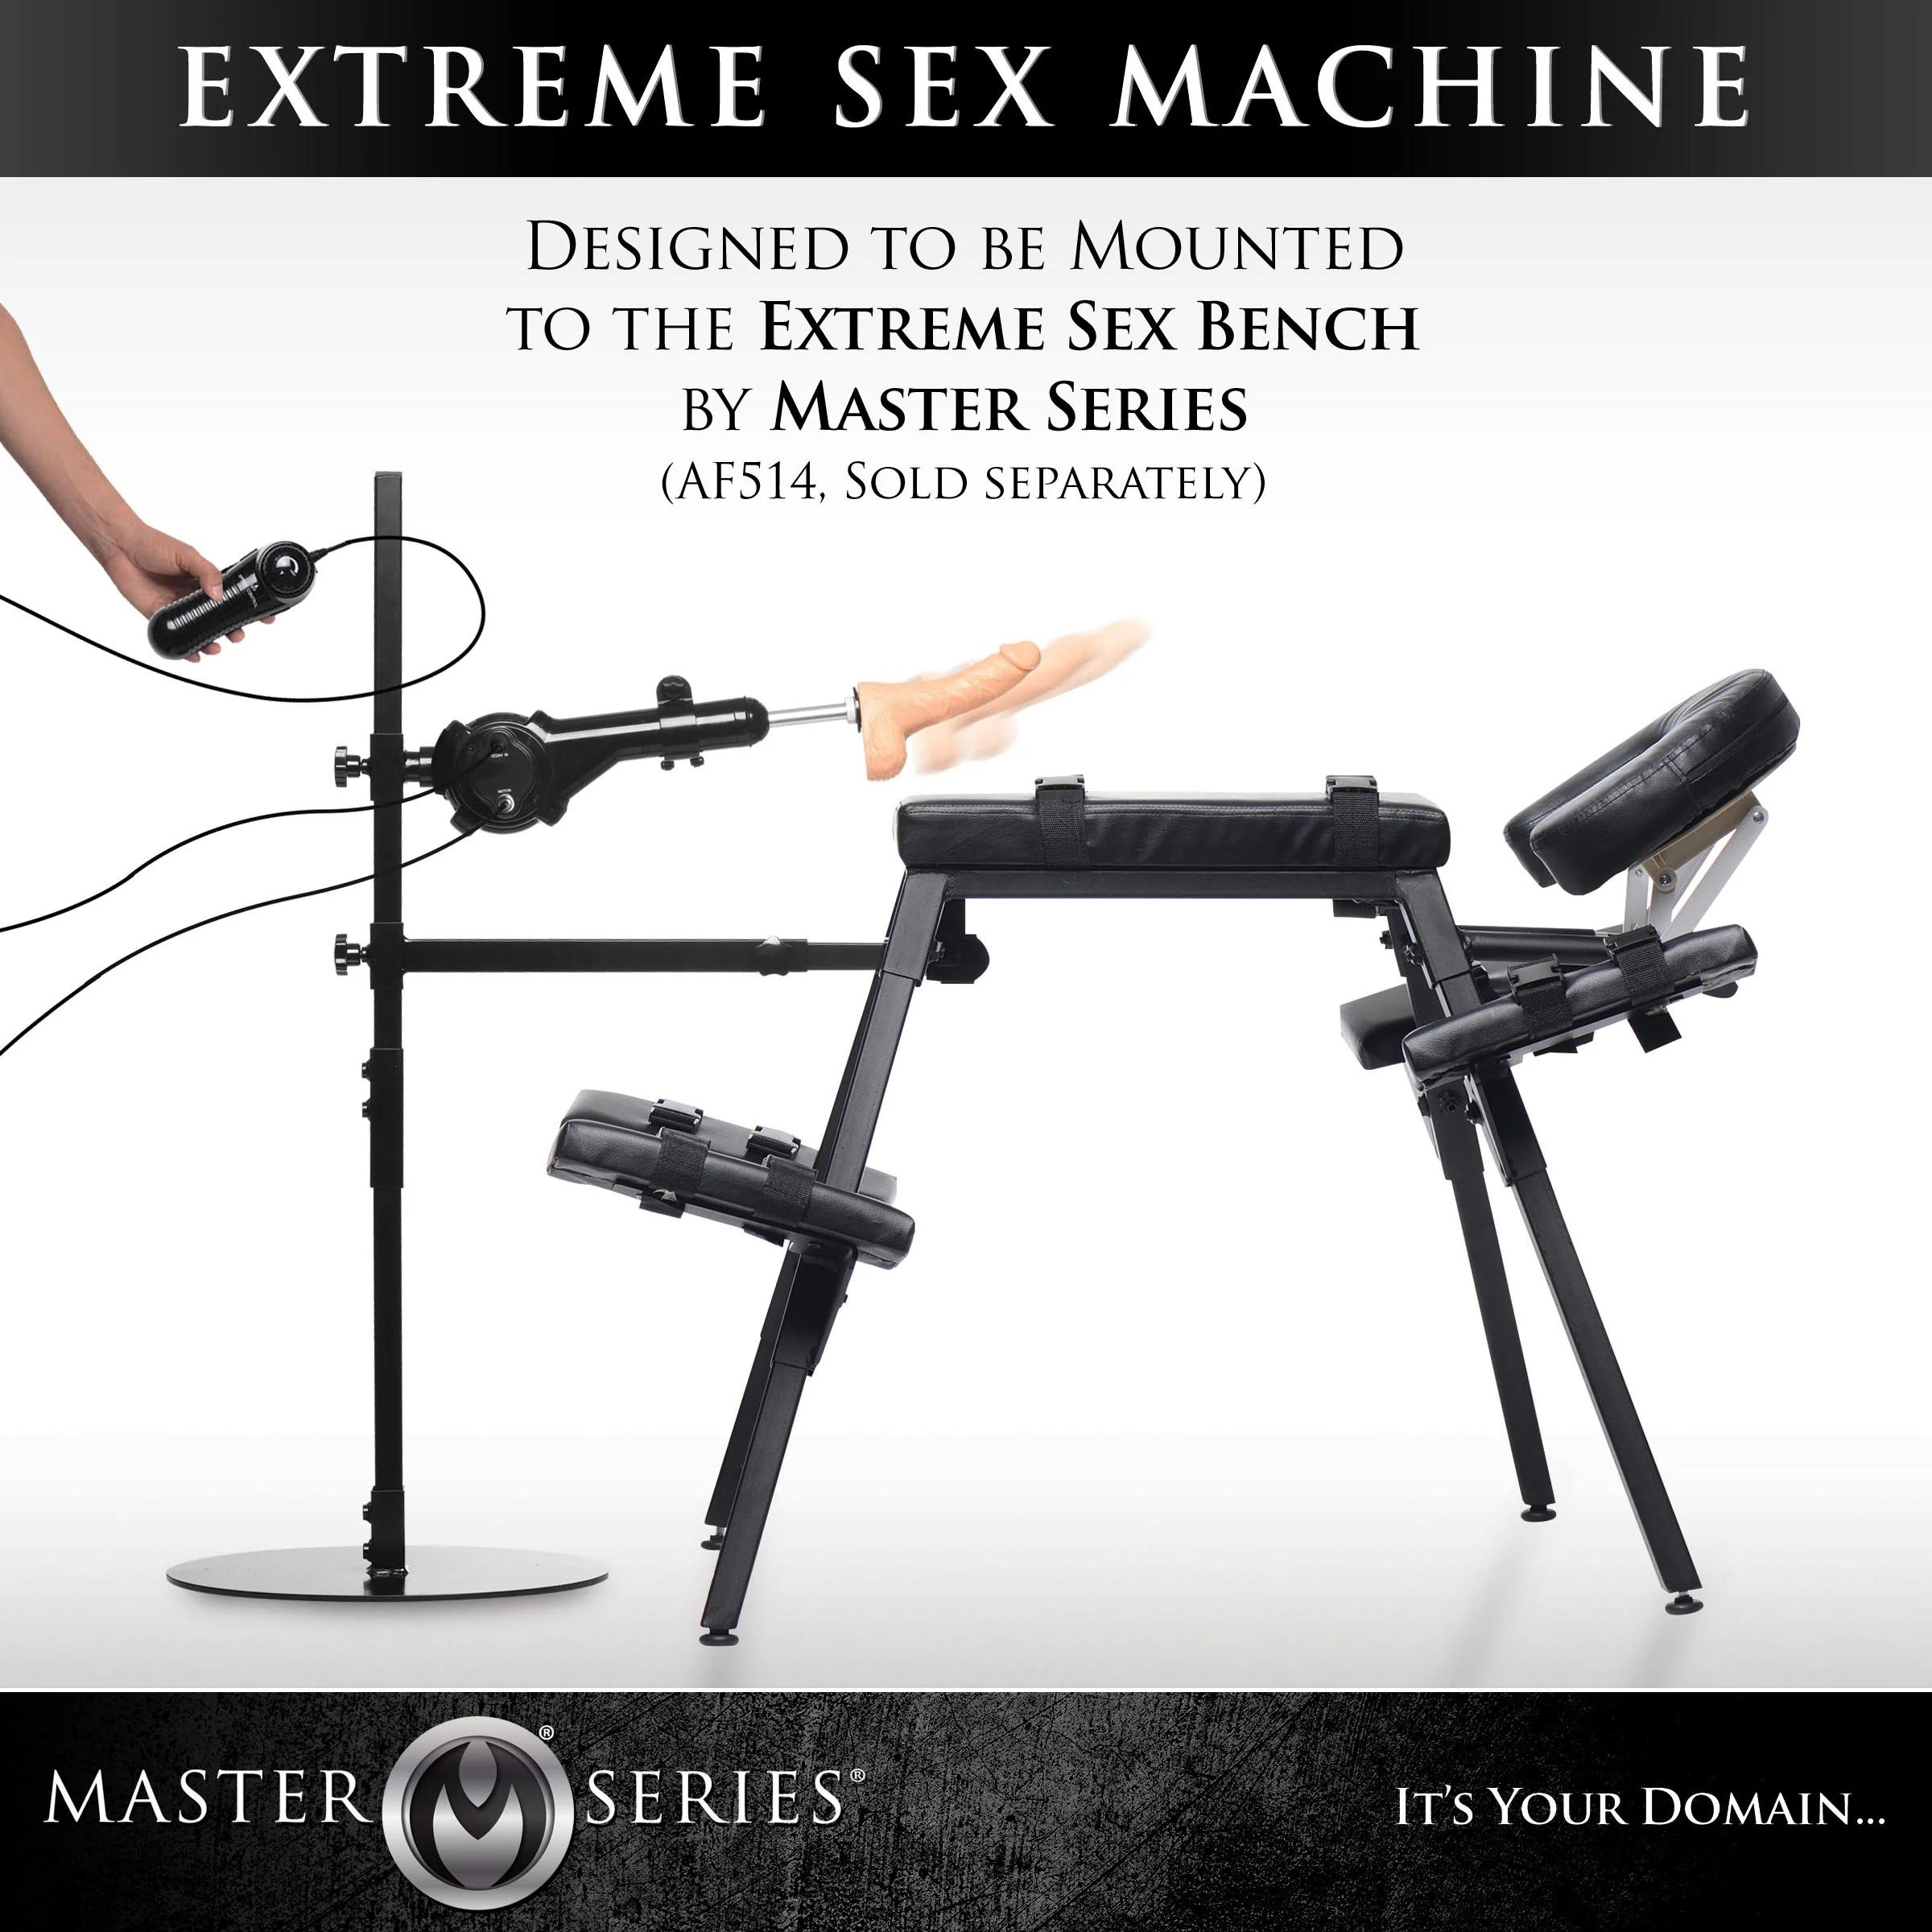 MASTER SERIES Sexmaschine Dicktator sexmaschinen 2.0